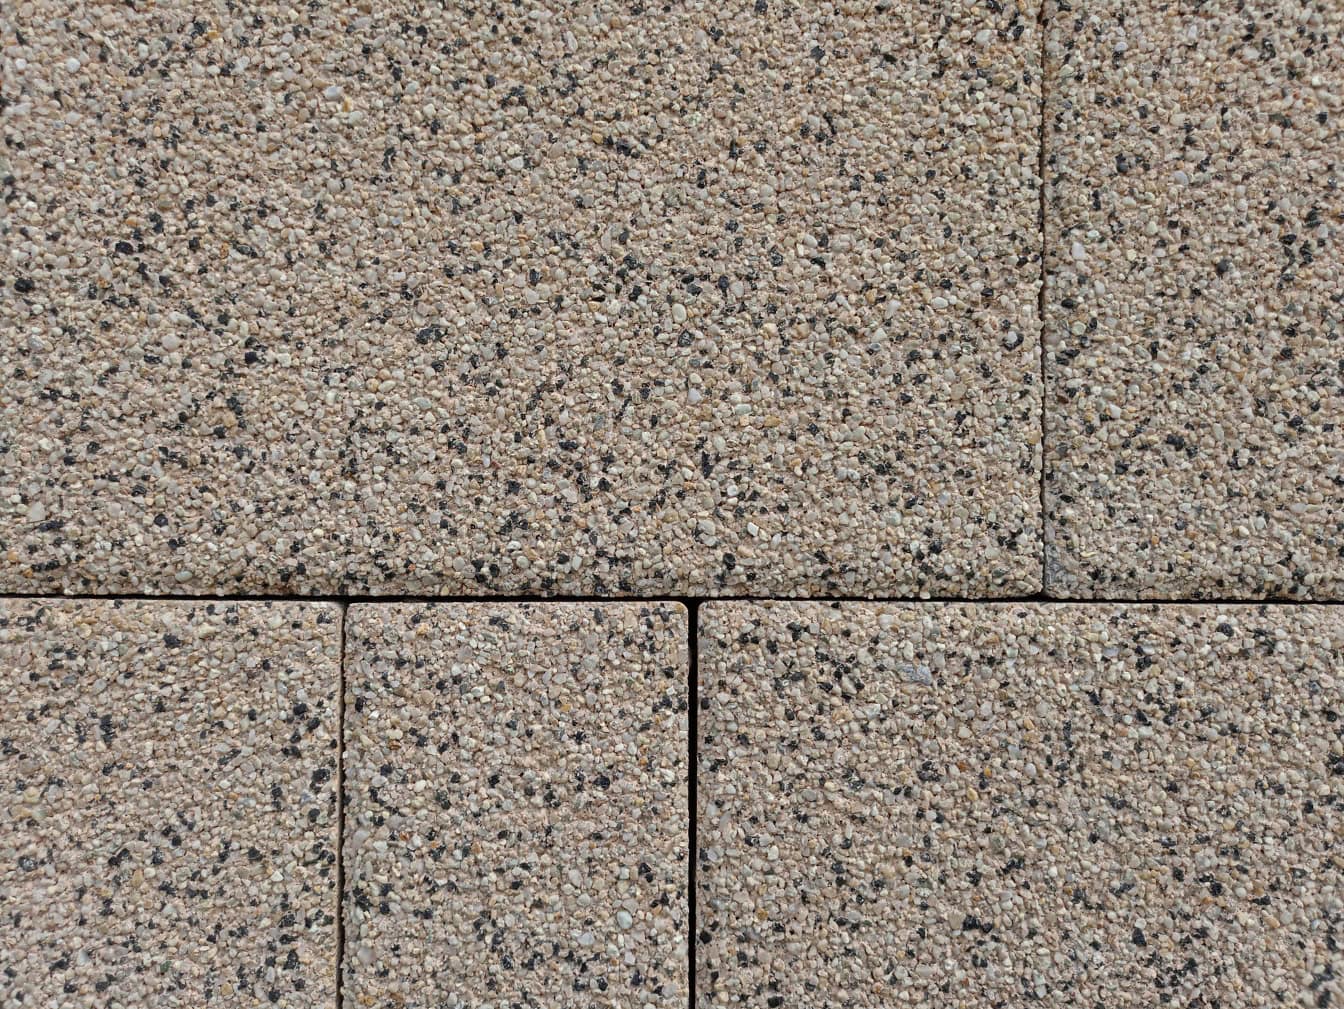 Lähikuva hyvin pienistä graniittikivistä valmistettujen kivilaattojen tekstuurista